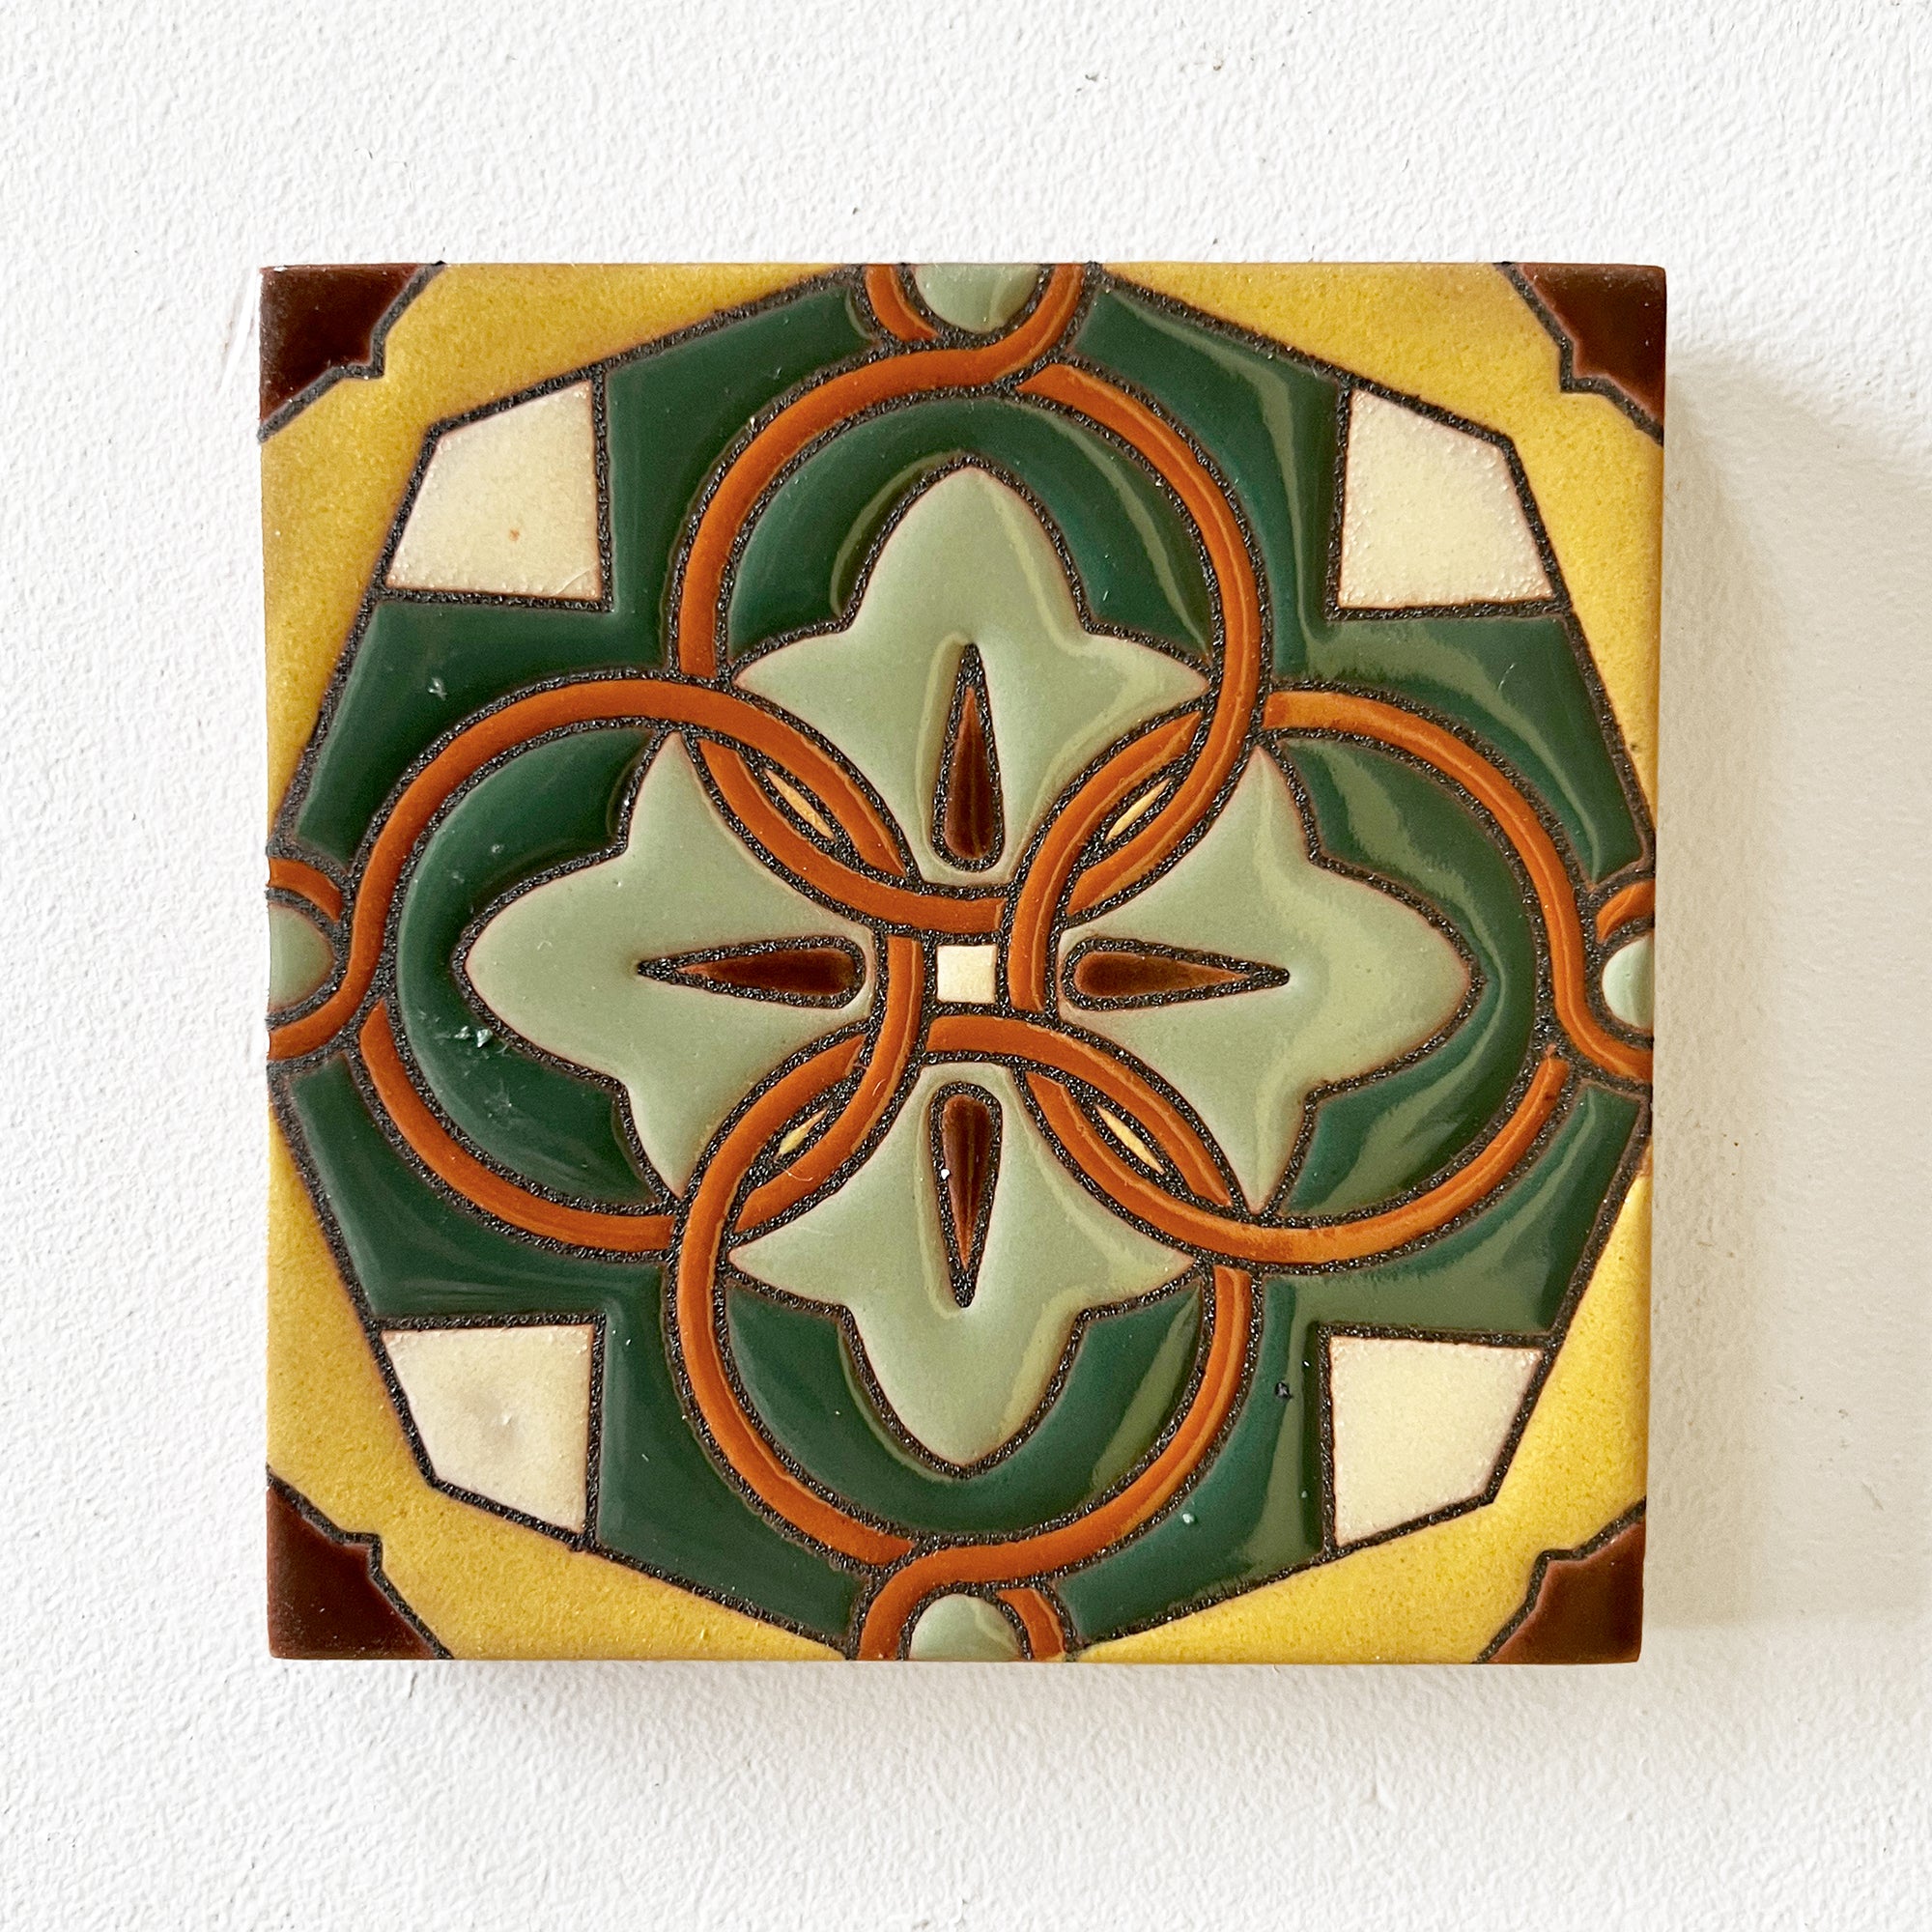 Malibu Tile Coasters - Set of 4 - "Jade, Mustard & Sage"